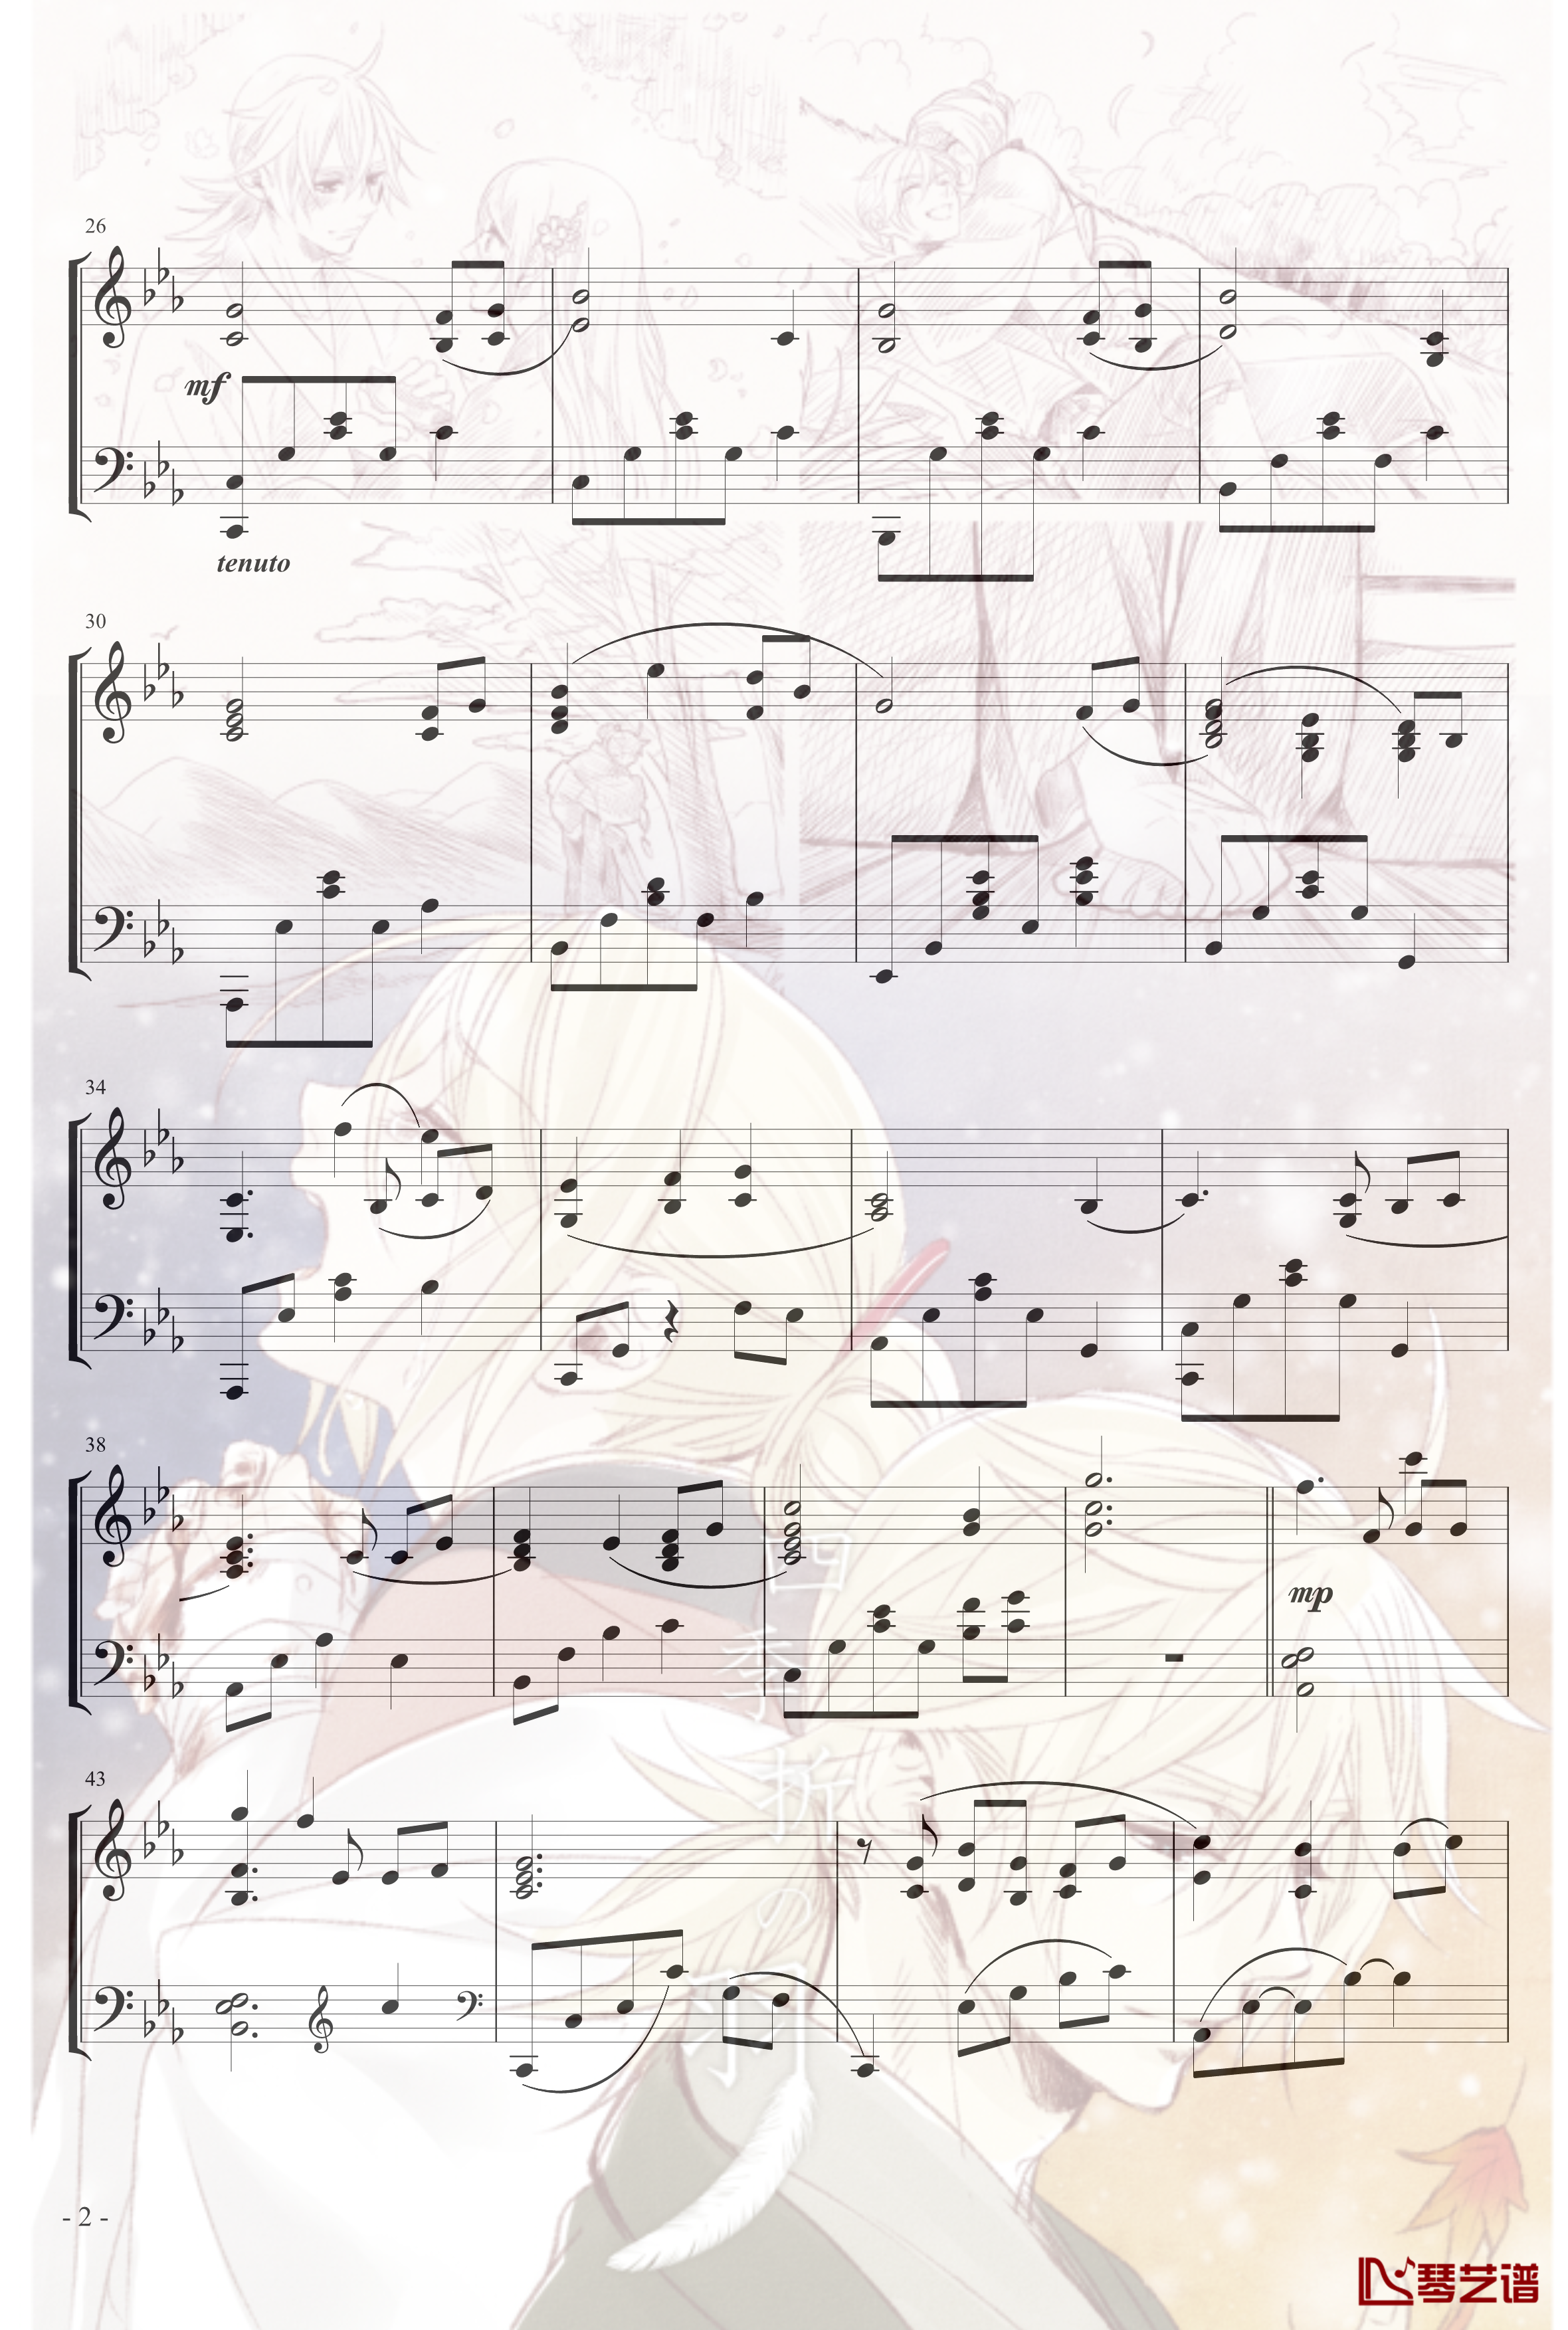 镜音リン レン四季折之羽钢琴谱-初音未来2